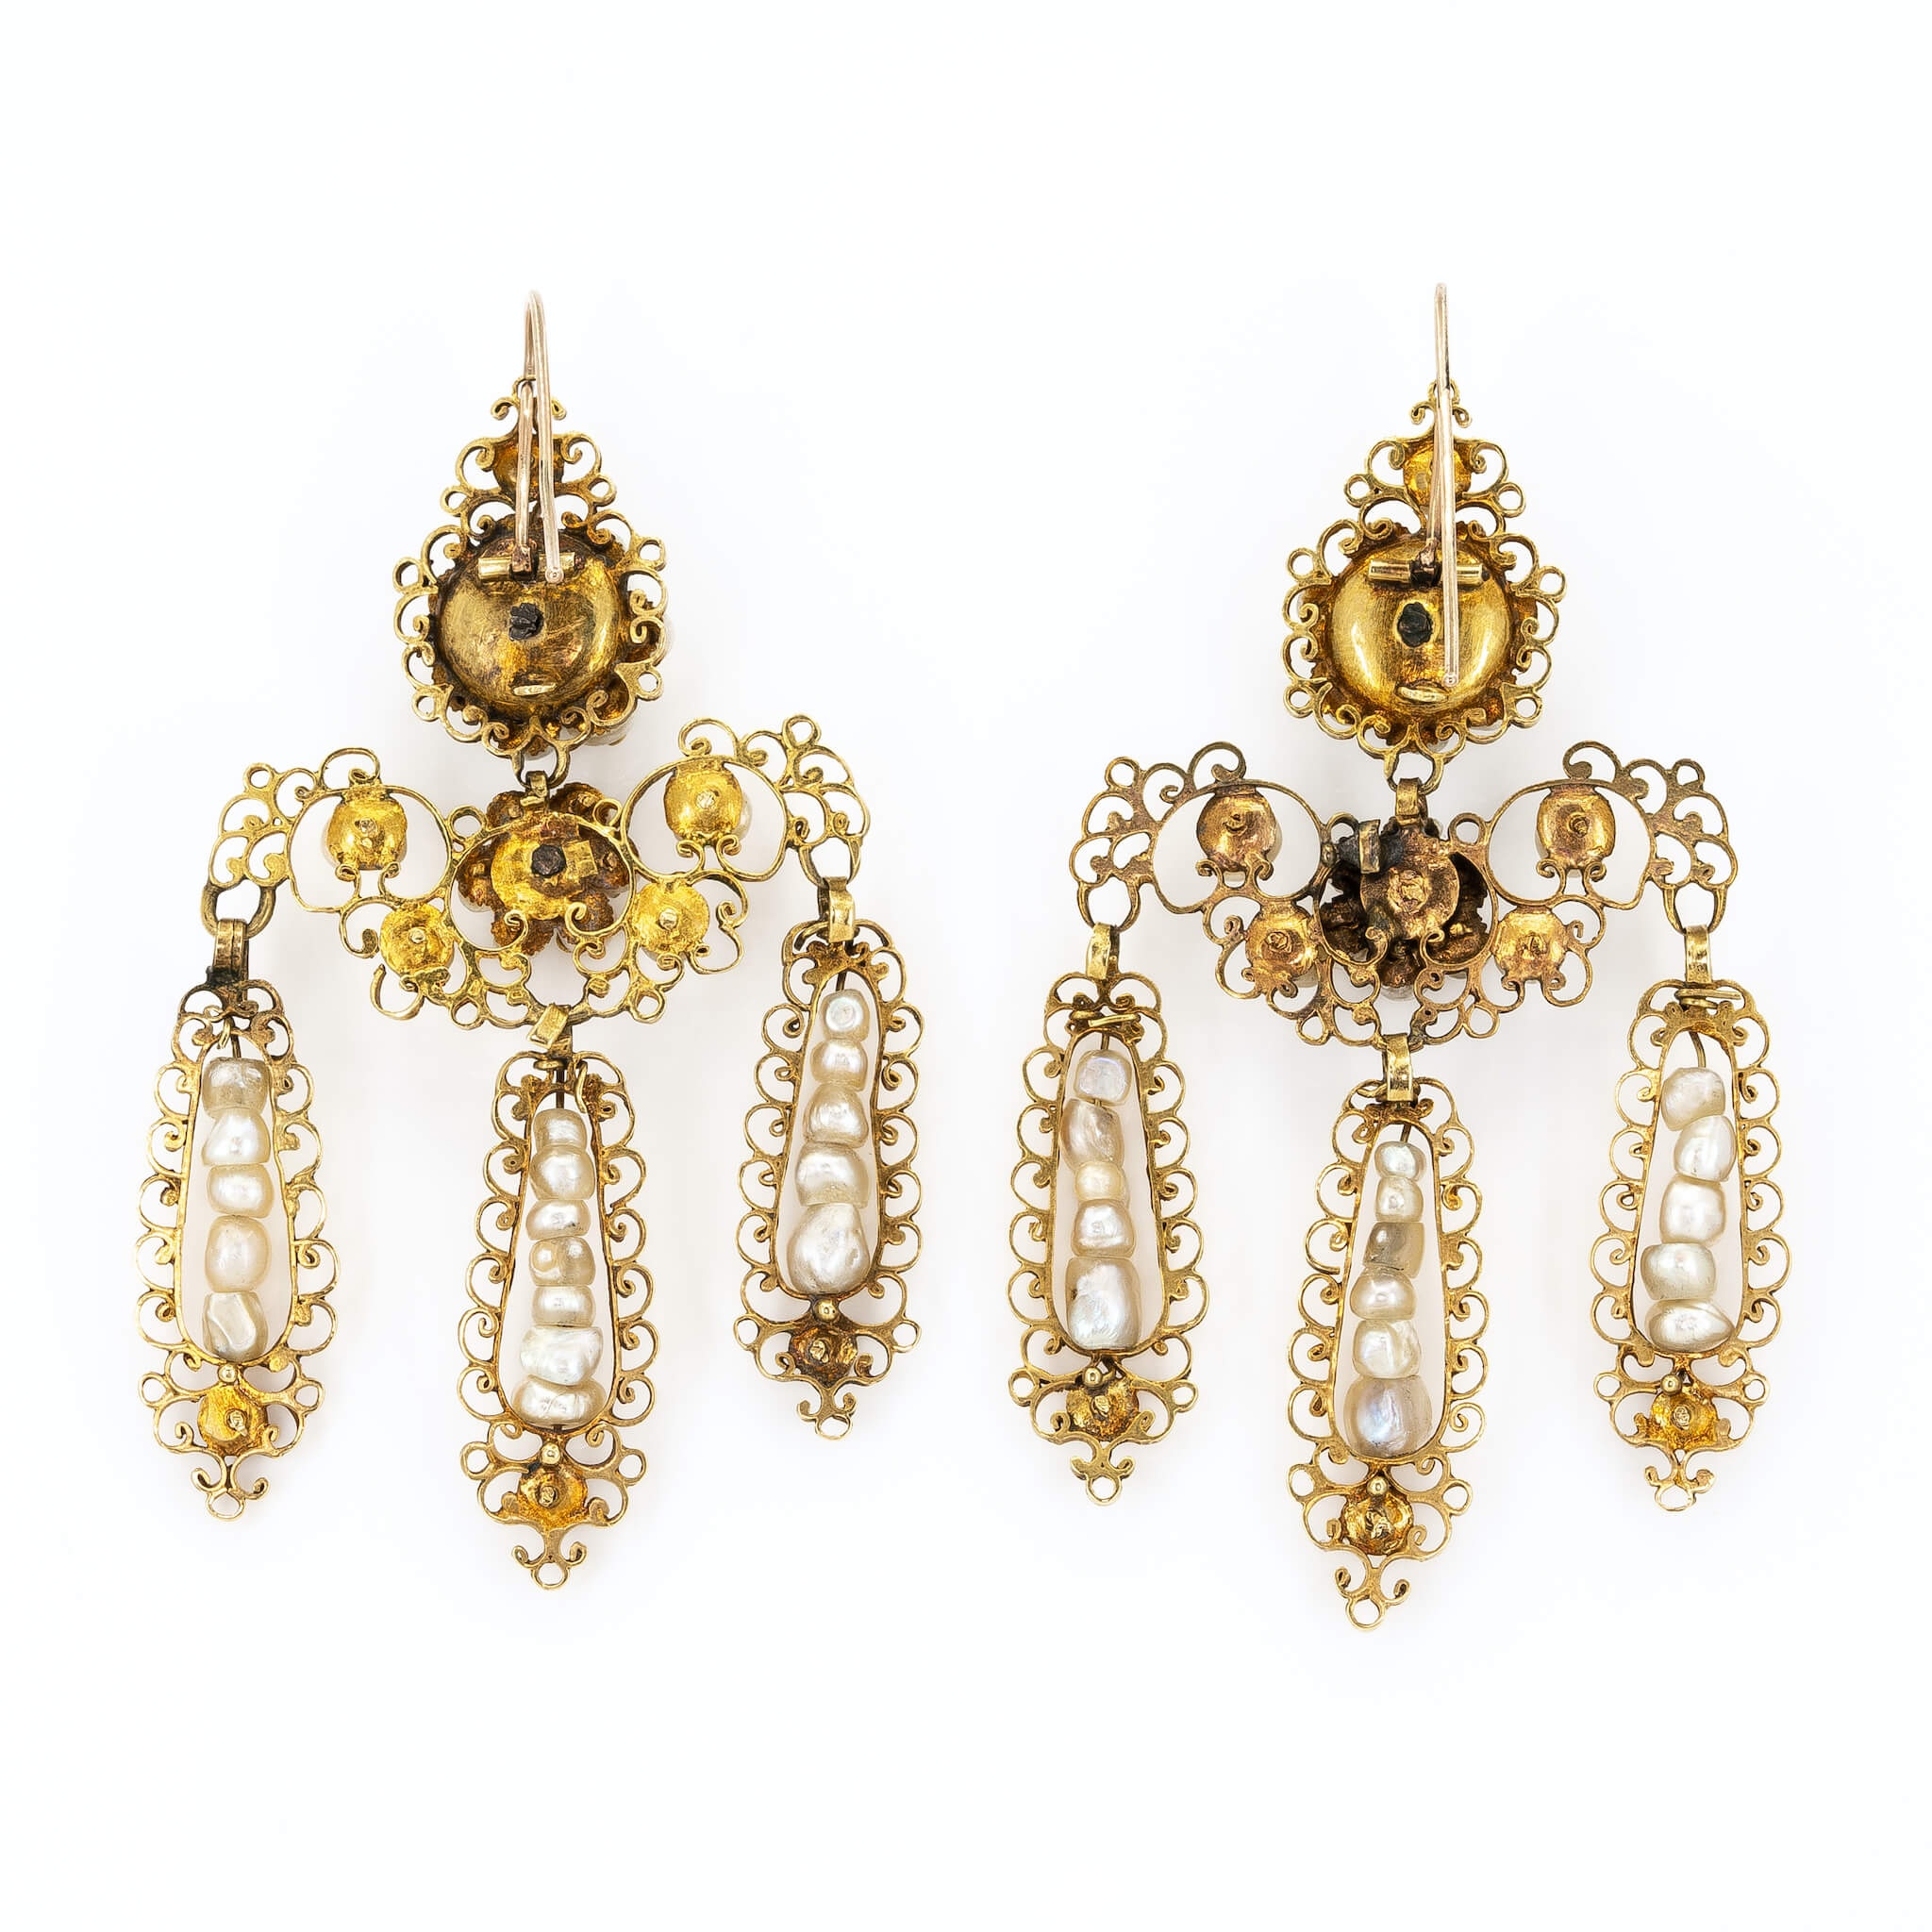 Neopolitan Girandole Diamond and Pearl Drop Earrings